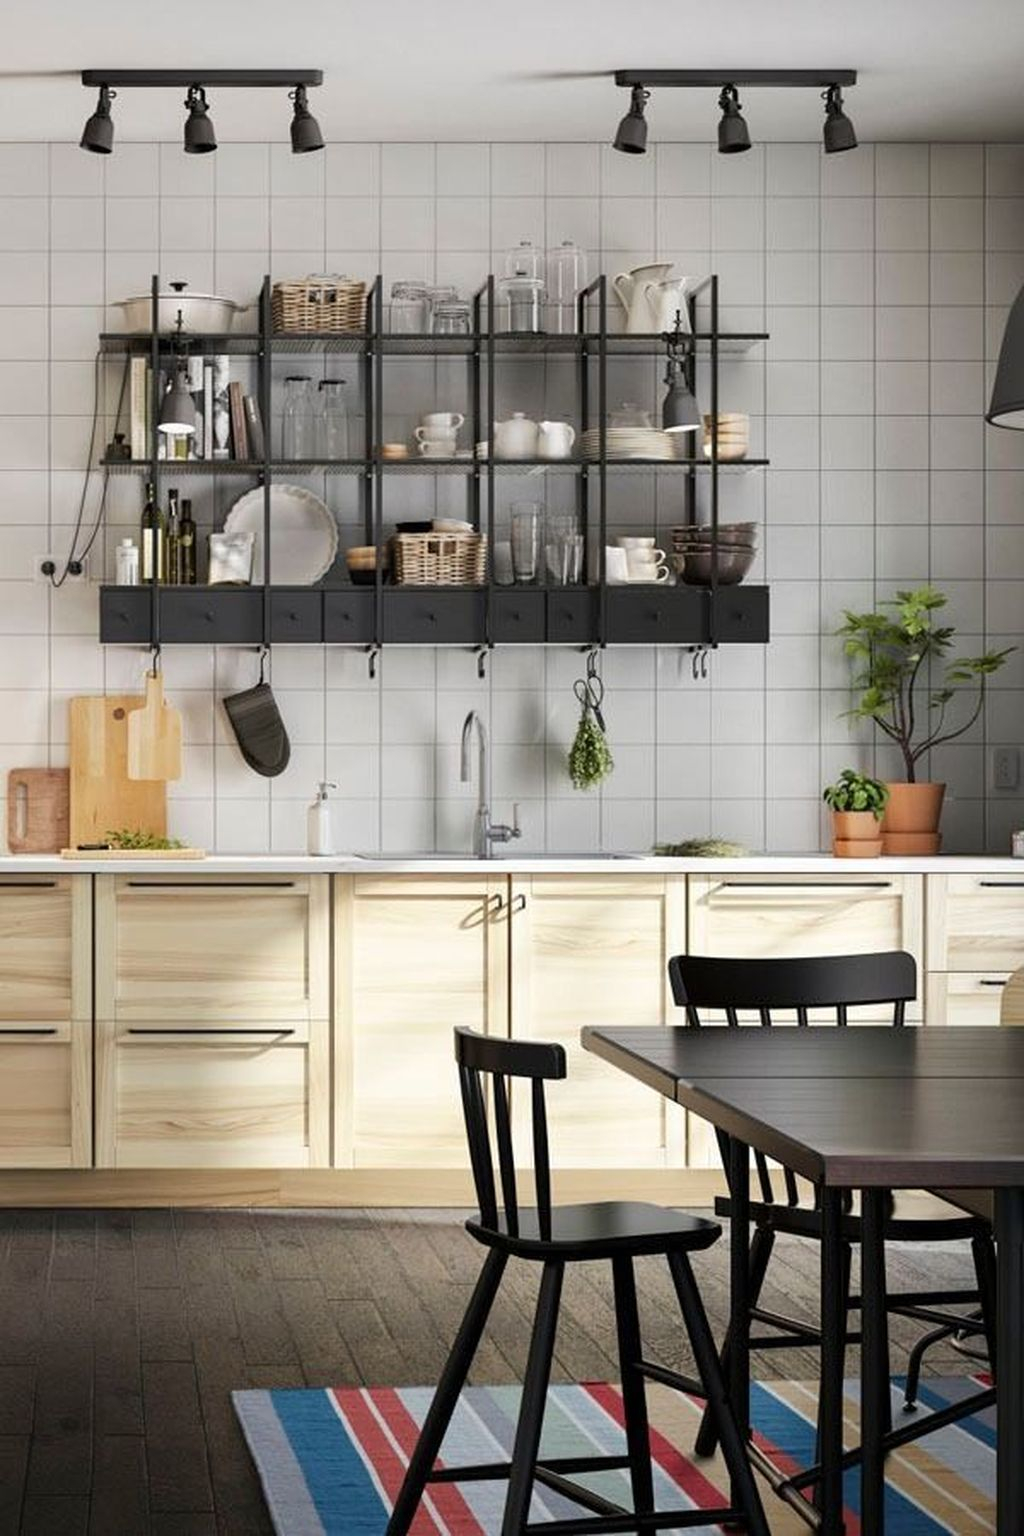 Wonderful Industrial Kitchen Shelf Design Ideas To Organize Your Kitchen23